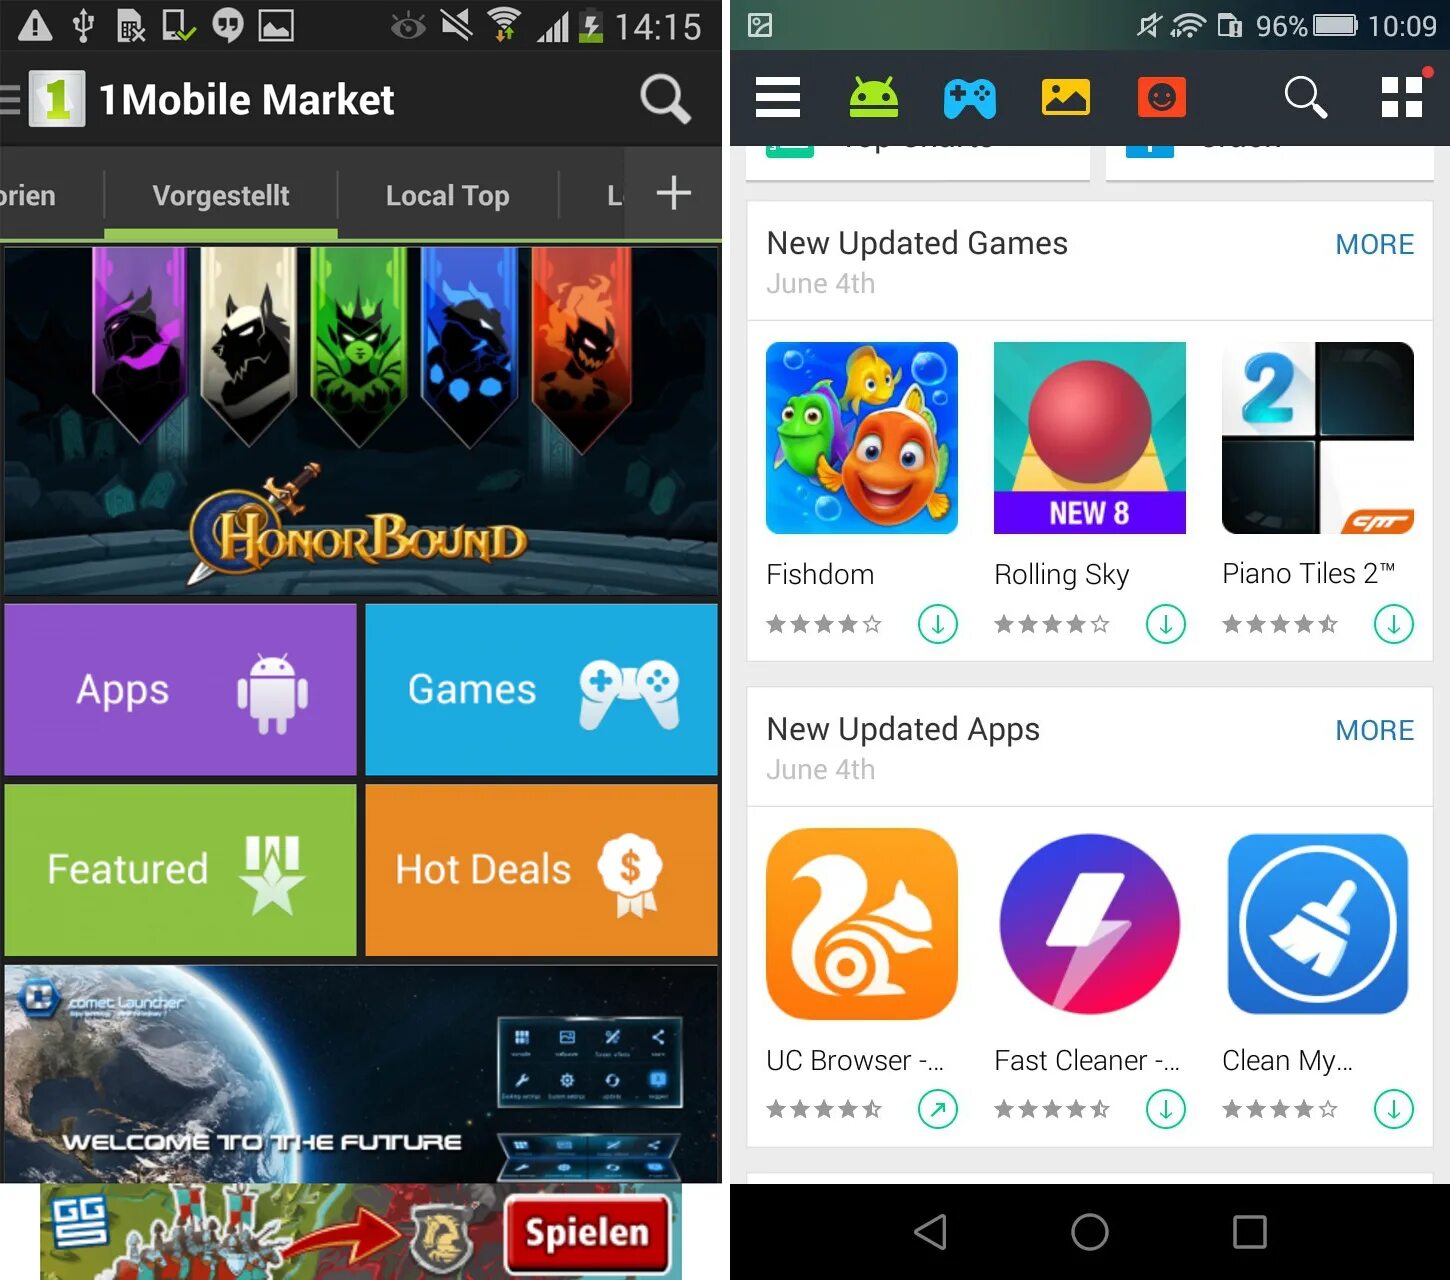 Андроид Маркет. 1 Мобильный Маркет. Android Market приложение. Магазин 1 mobile. Бесплатный мобильный маркет